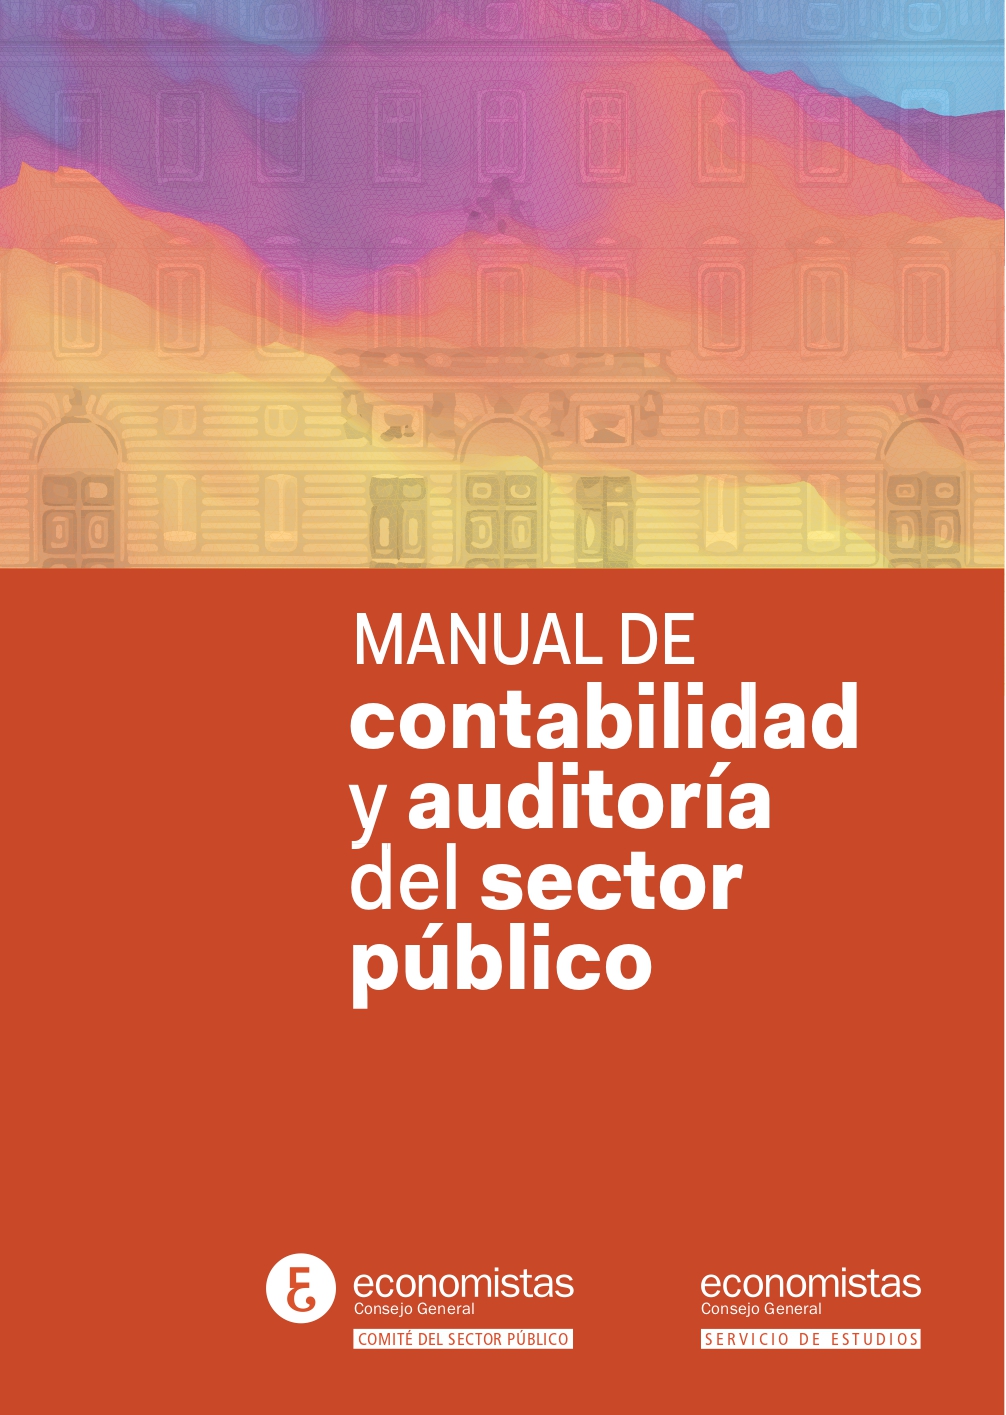 Portada_Manual de contabilidad y auditoría del sector público-1_pages-to-jpg-0001